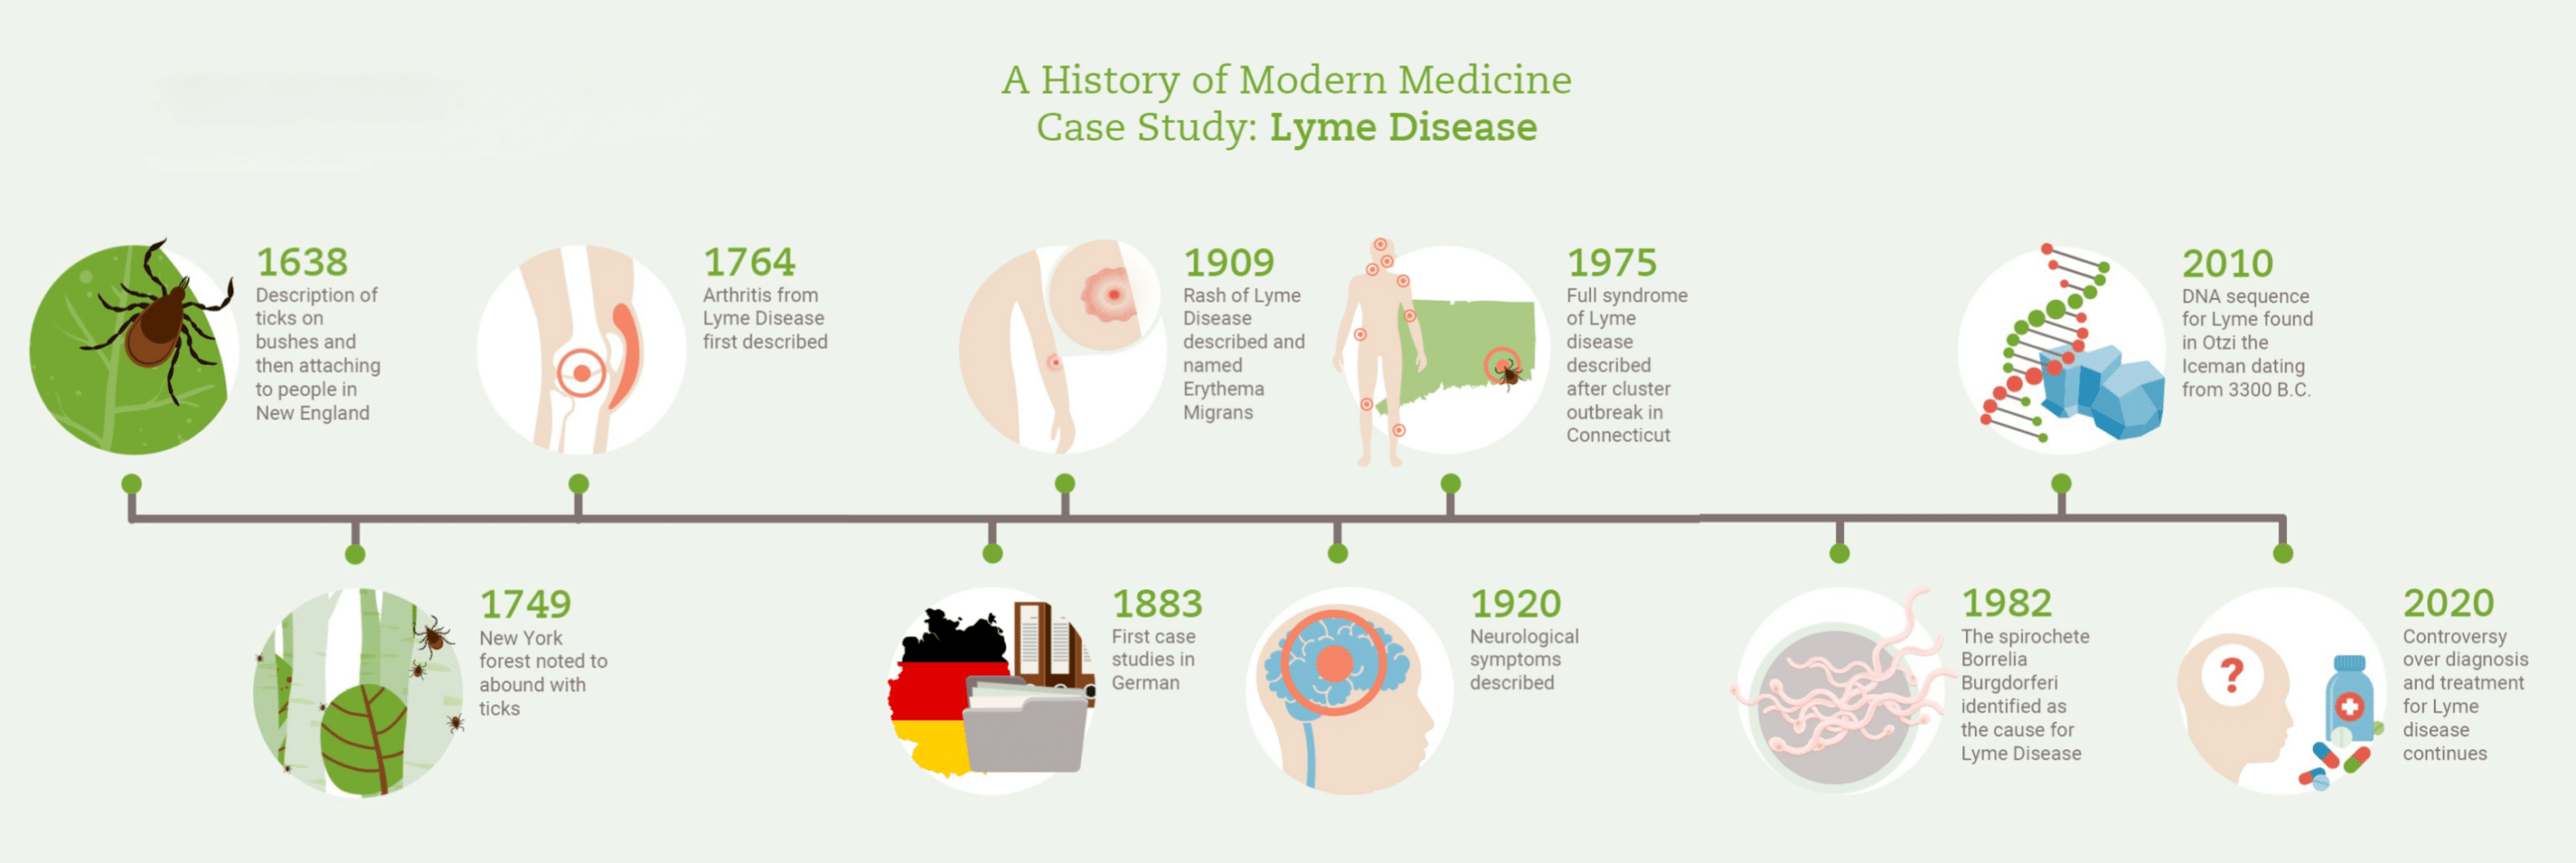 Timeline of Lyme Disease